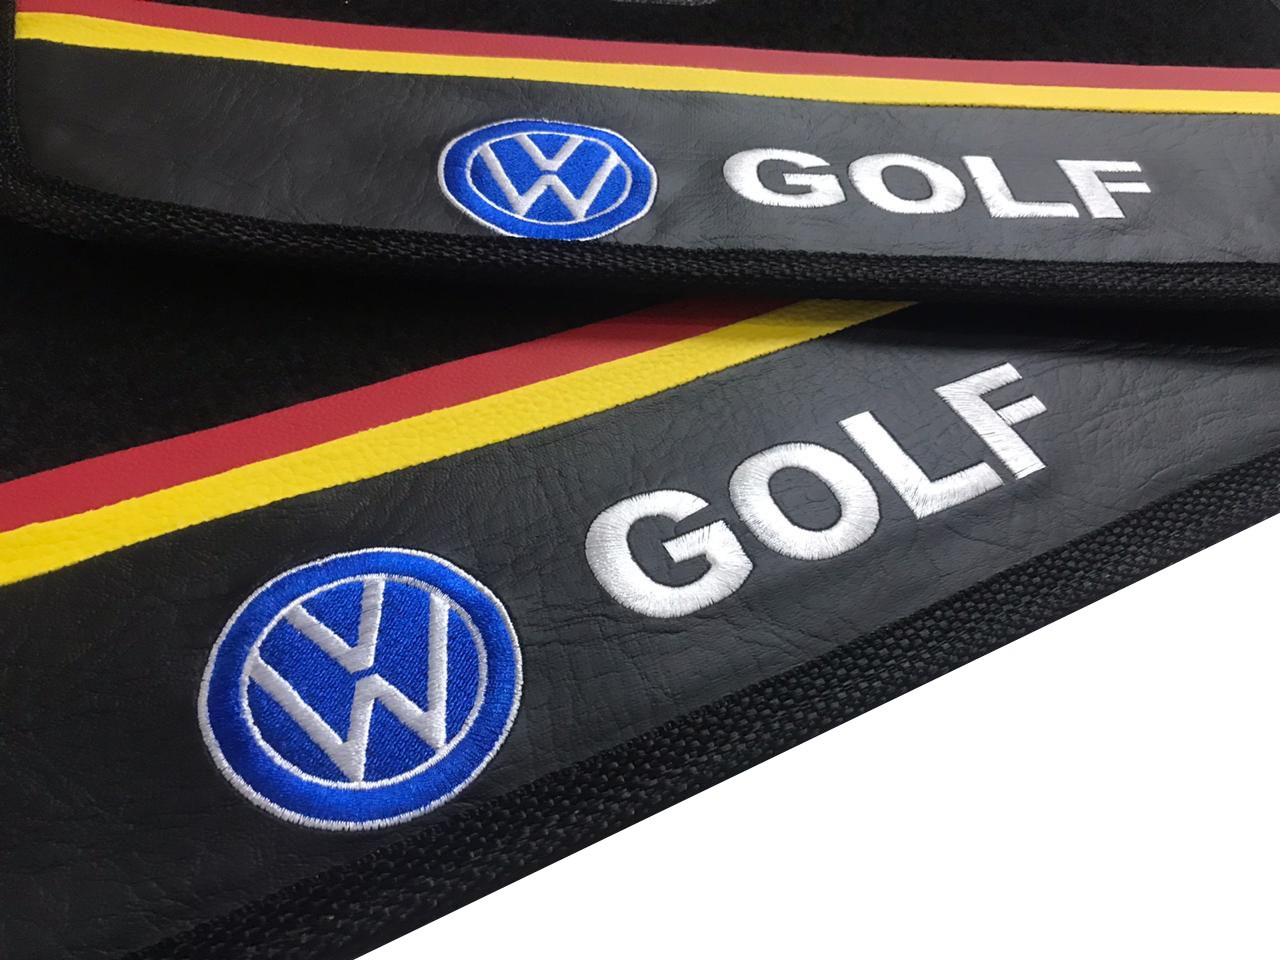 Tapete New Golf Gti Carpete Premium Original